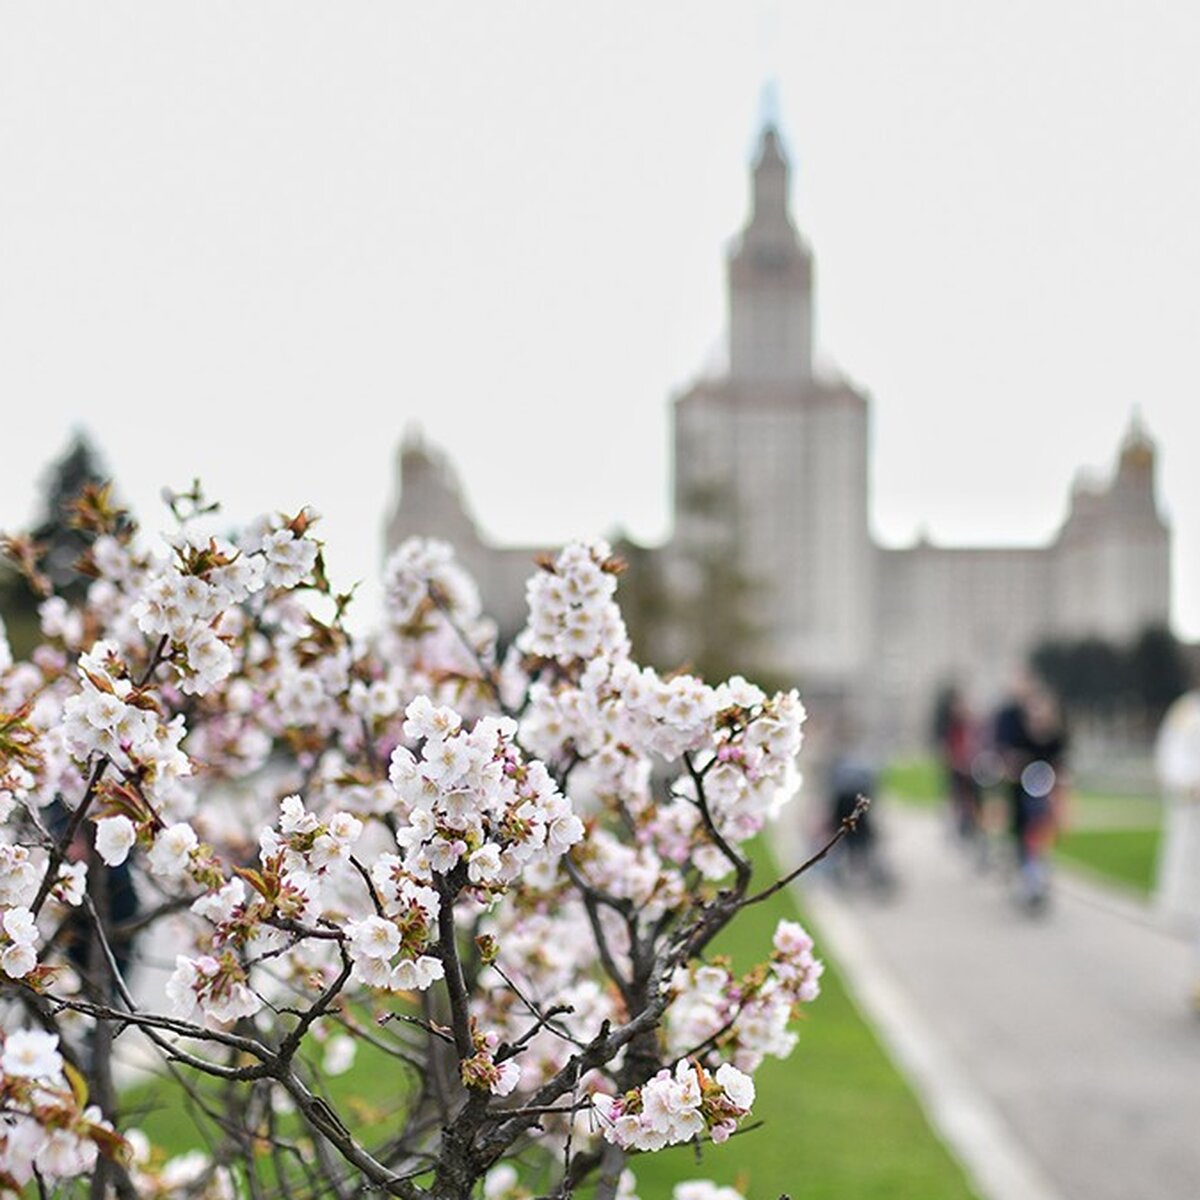 Планируя посещение аллеи сакуры, стоит учесть время цветения сакуры. Обычно цветение происходит в апреле и может продолжаться несколько недель. Лучшее время, чтобы увидеть аллею во всей красе, – это конец апреля или начало мая.